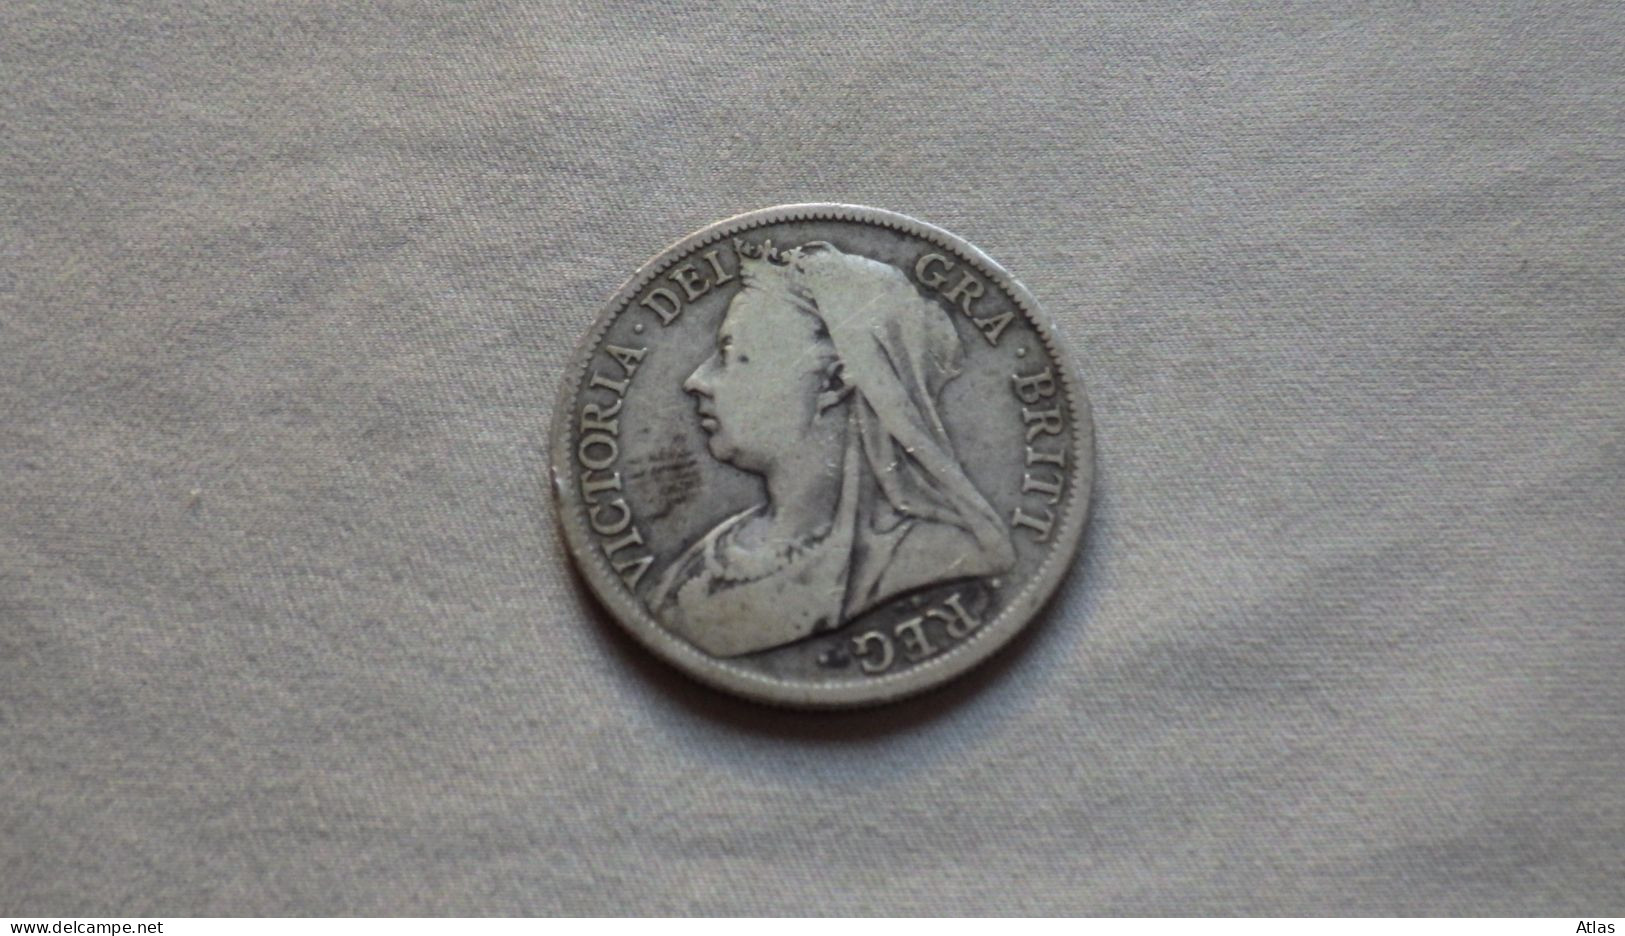 Half crown 1897 pièce de monnaie en argent